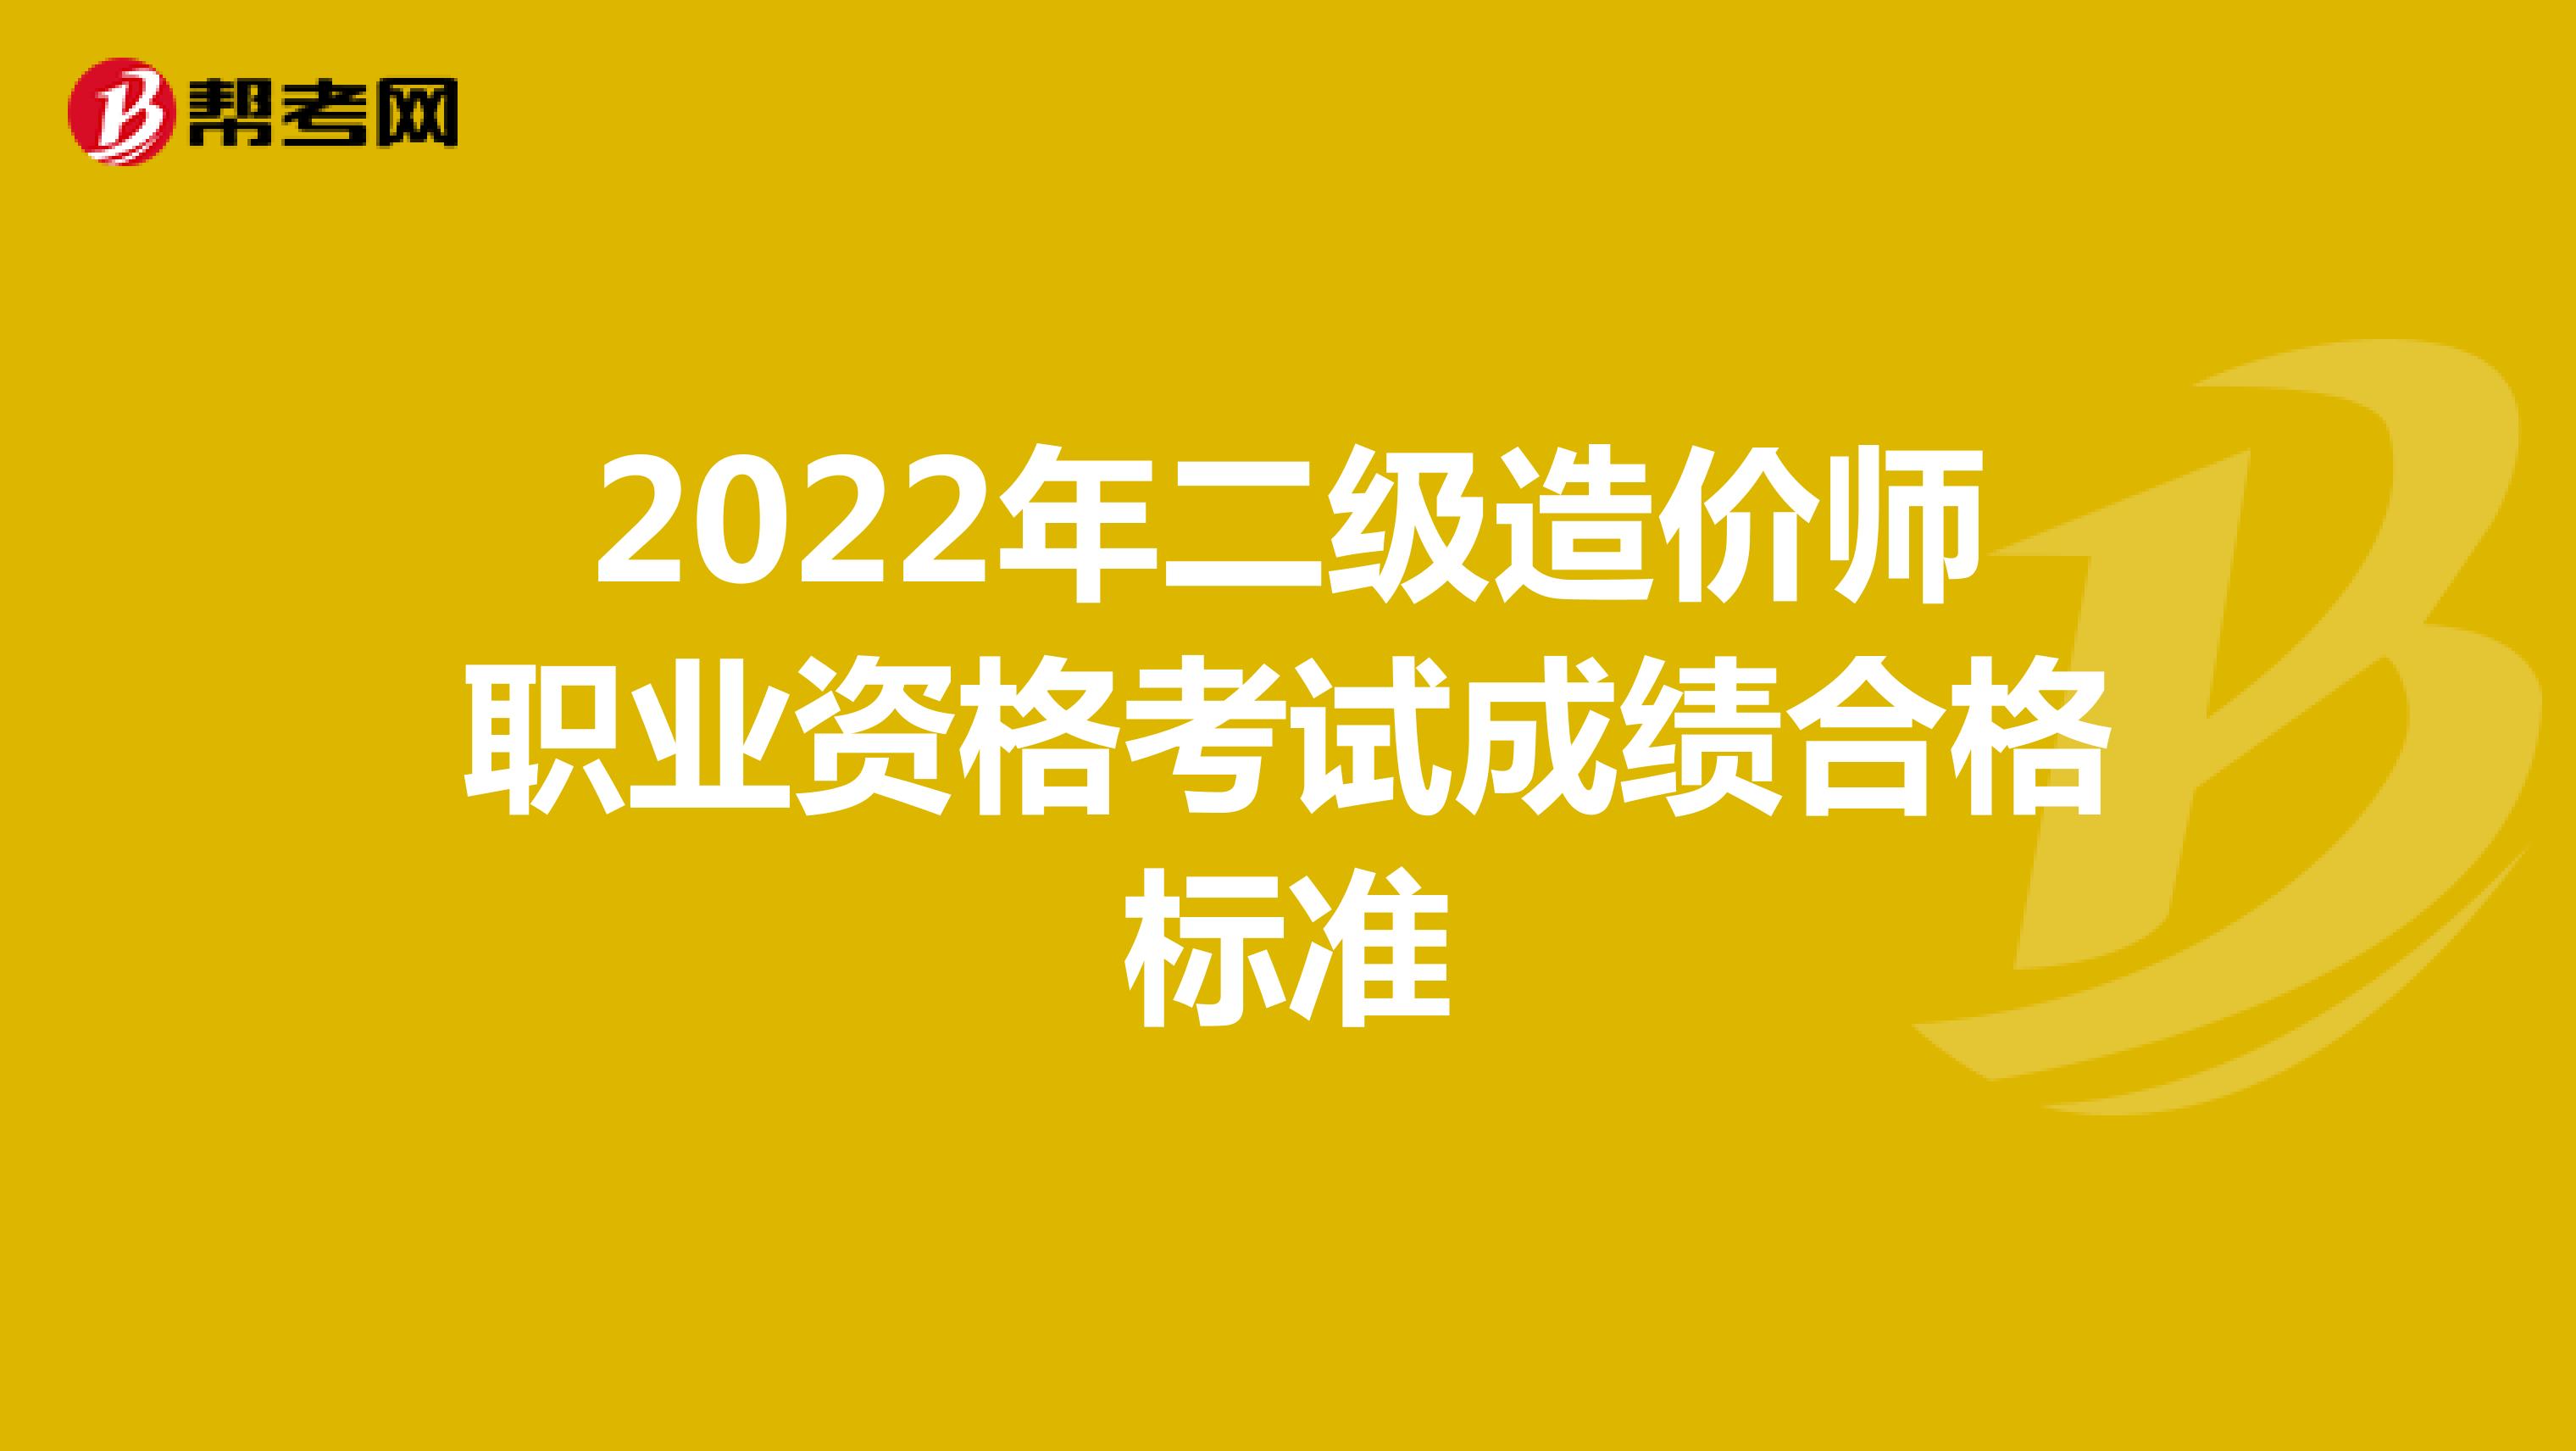 2022年二级造价师职业资格考试成绩合格标准